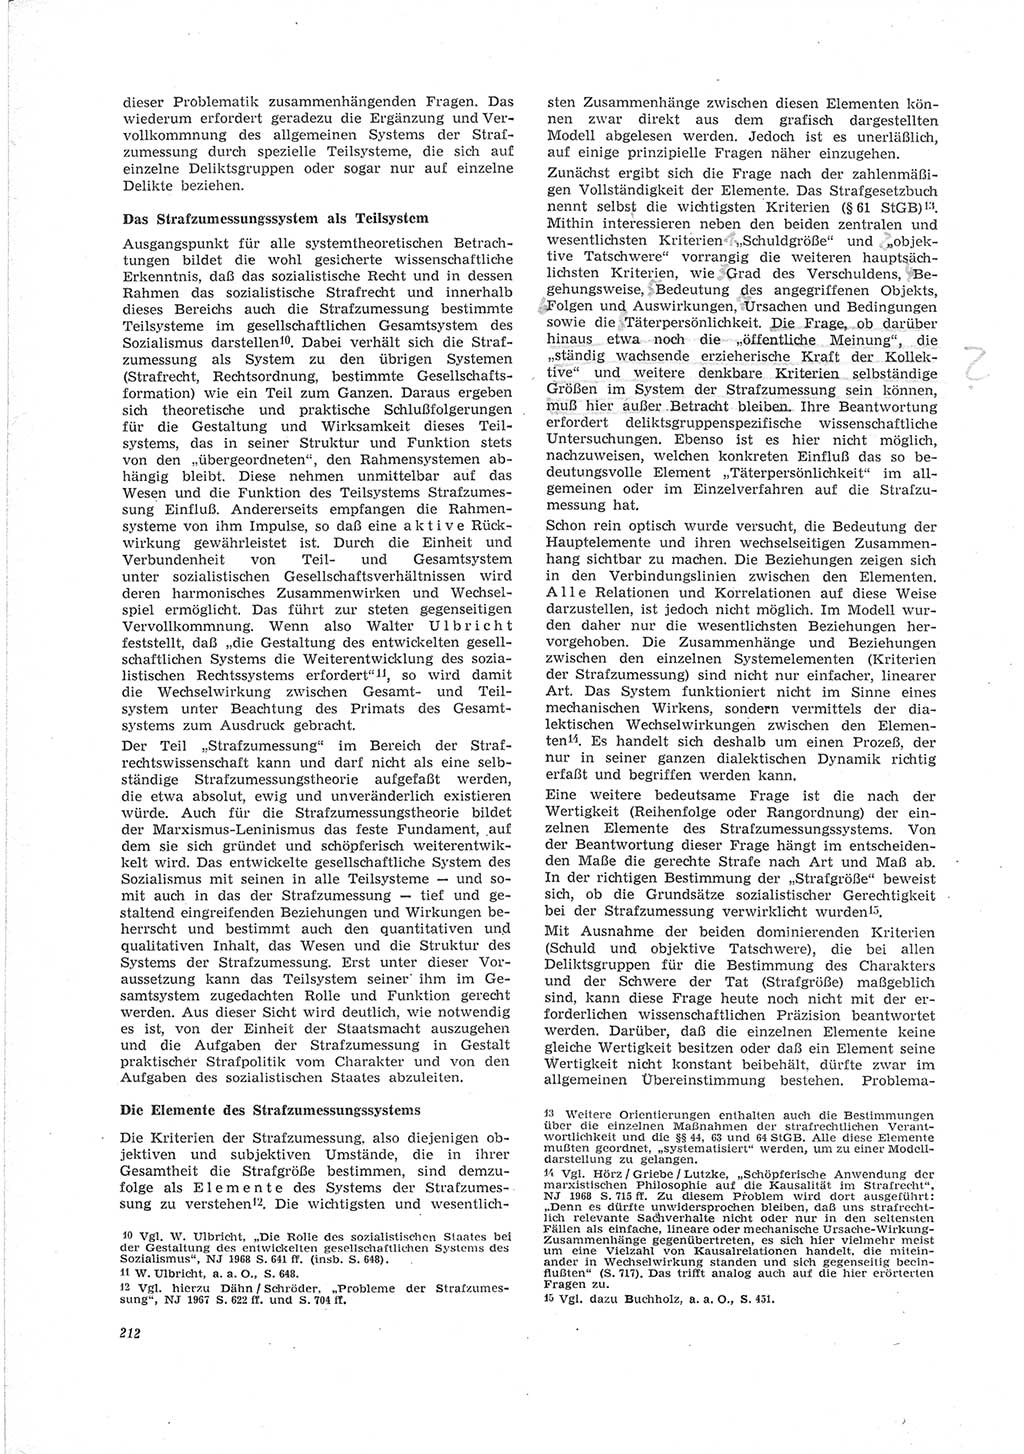 Neue Justiz (NJ), Zeitschrift für Recht und Rechtswissenschaft [Deutsche Demokratische Republik (DDR)], 23. Jahrgang 1969, Seite 212 (NJ DDR 1969, S. 212)